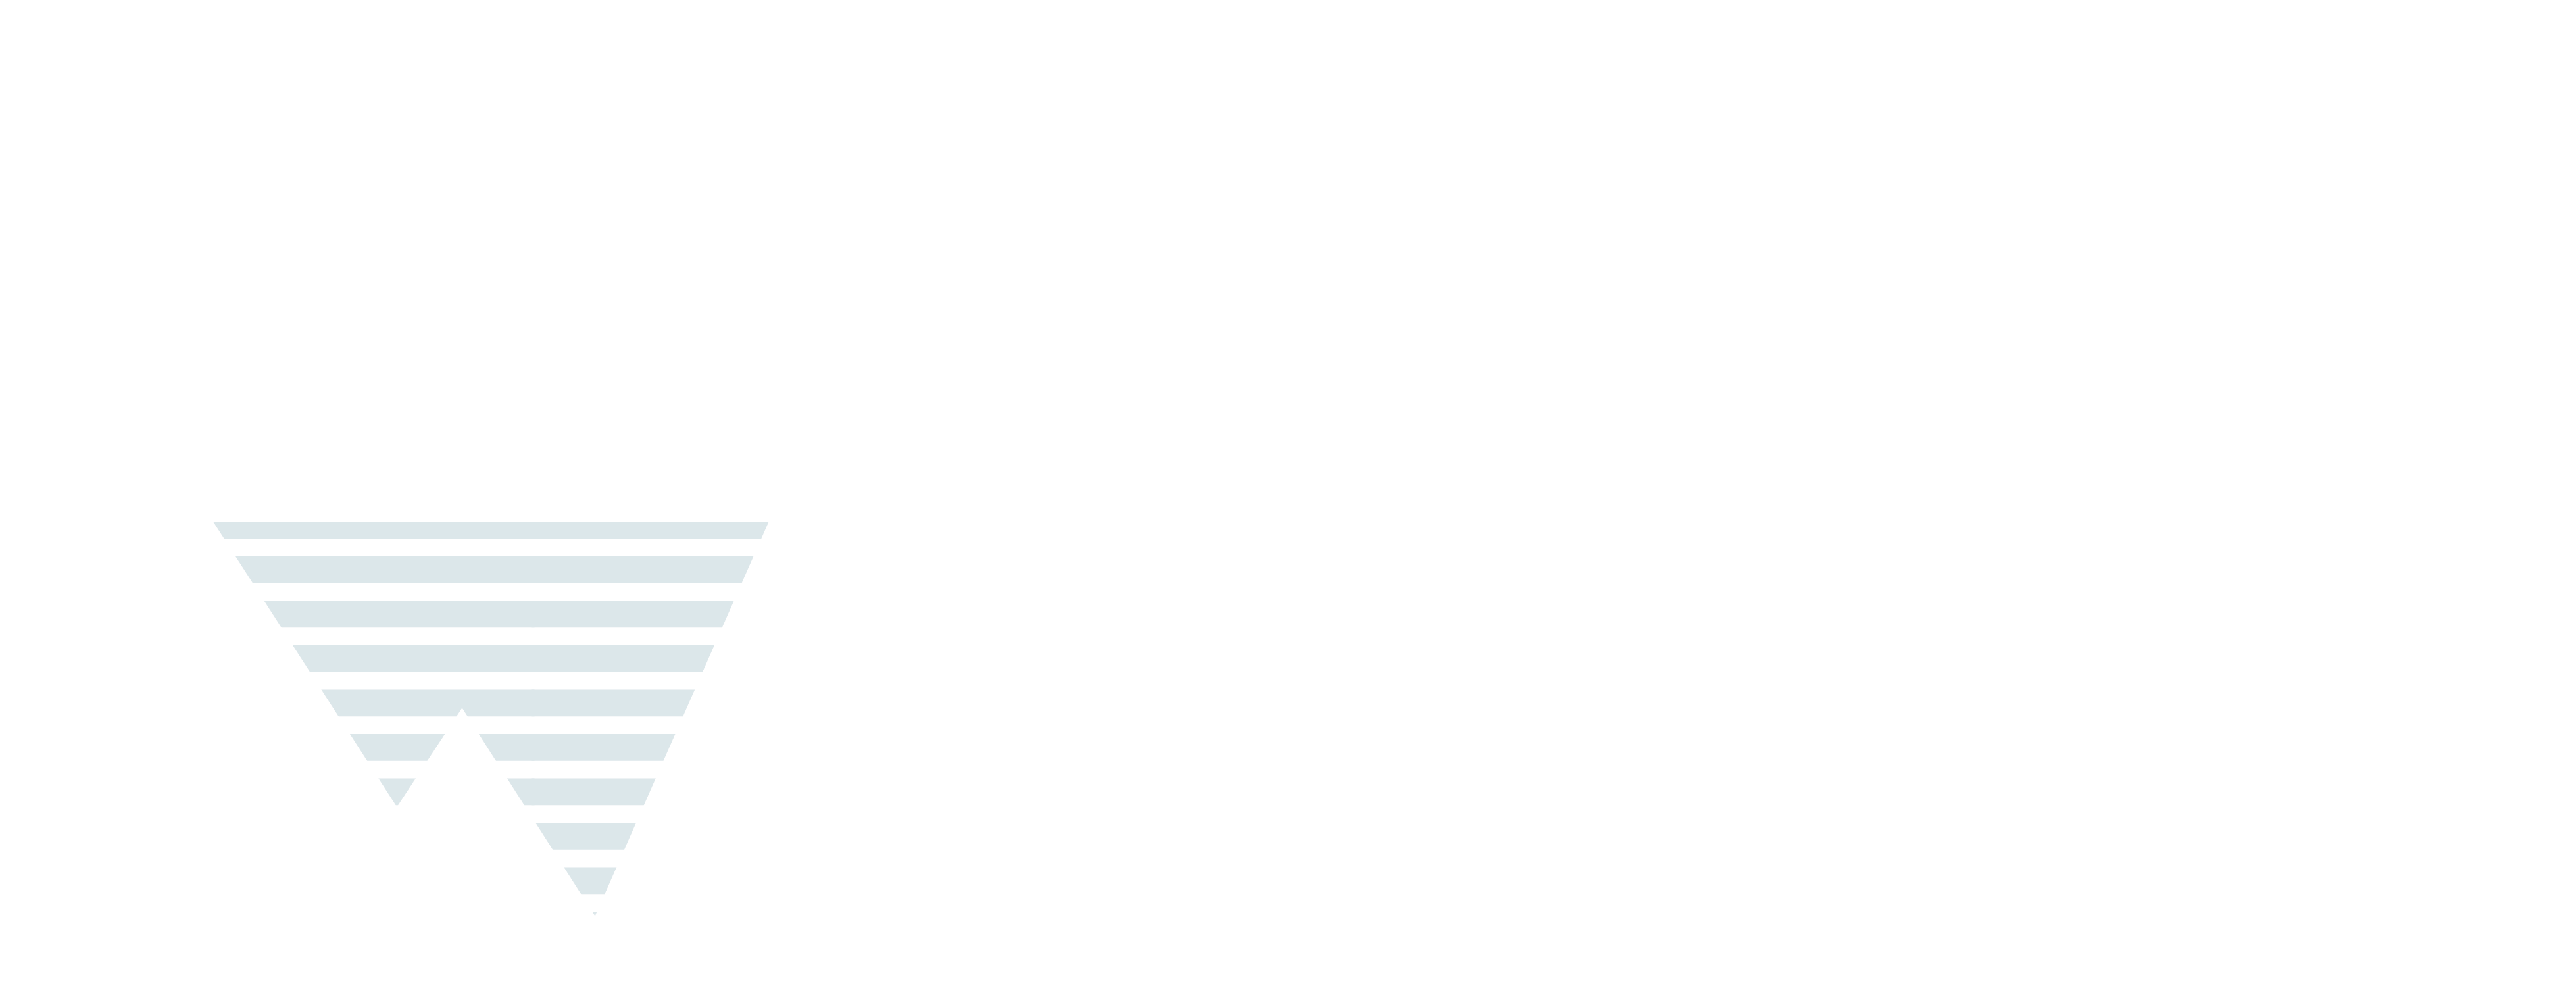 CJPL Neutrino Experiment